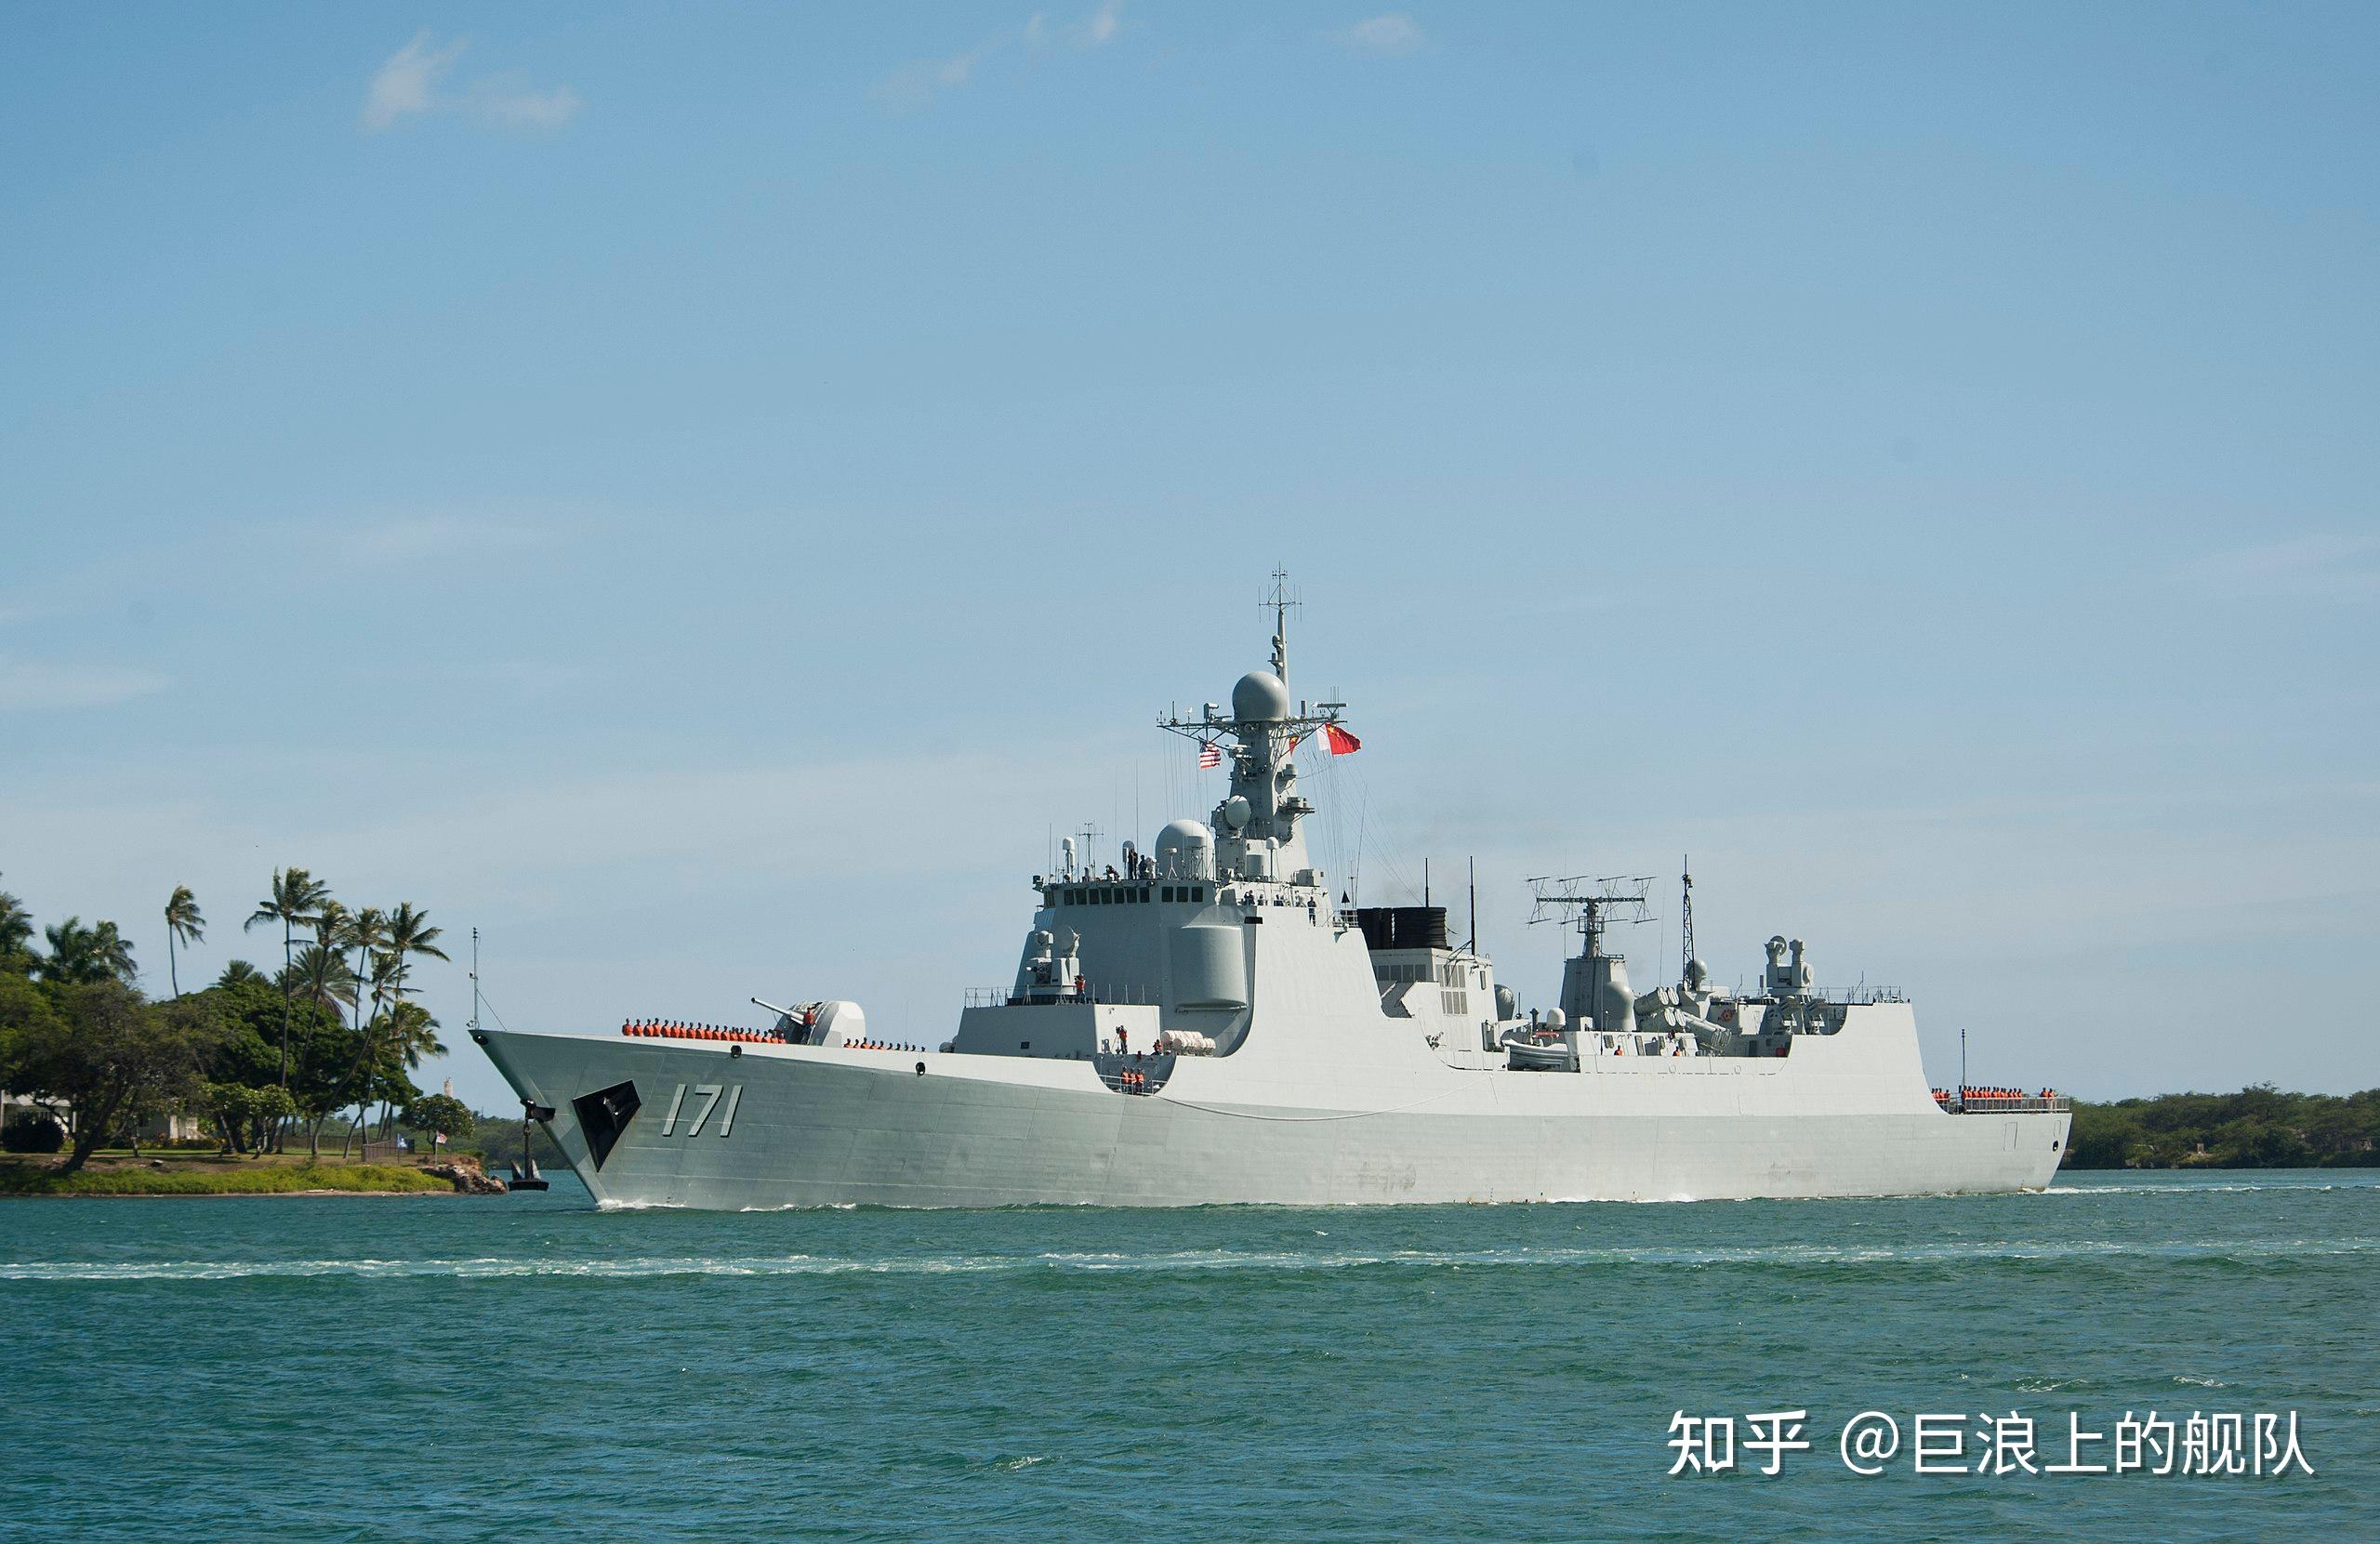 中国海军 052c 旅阳ii 级052d 旅阳iii级 驱逐舰 